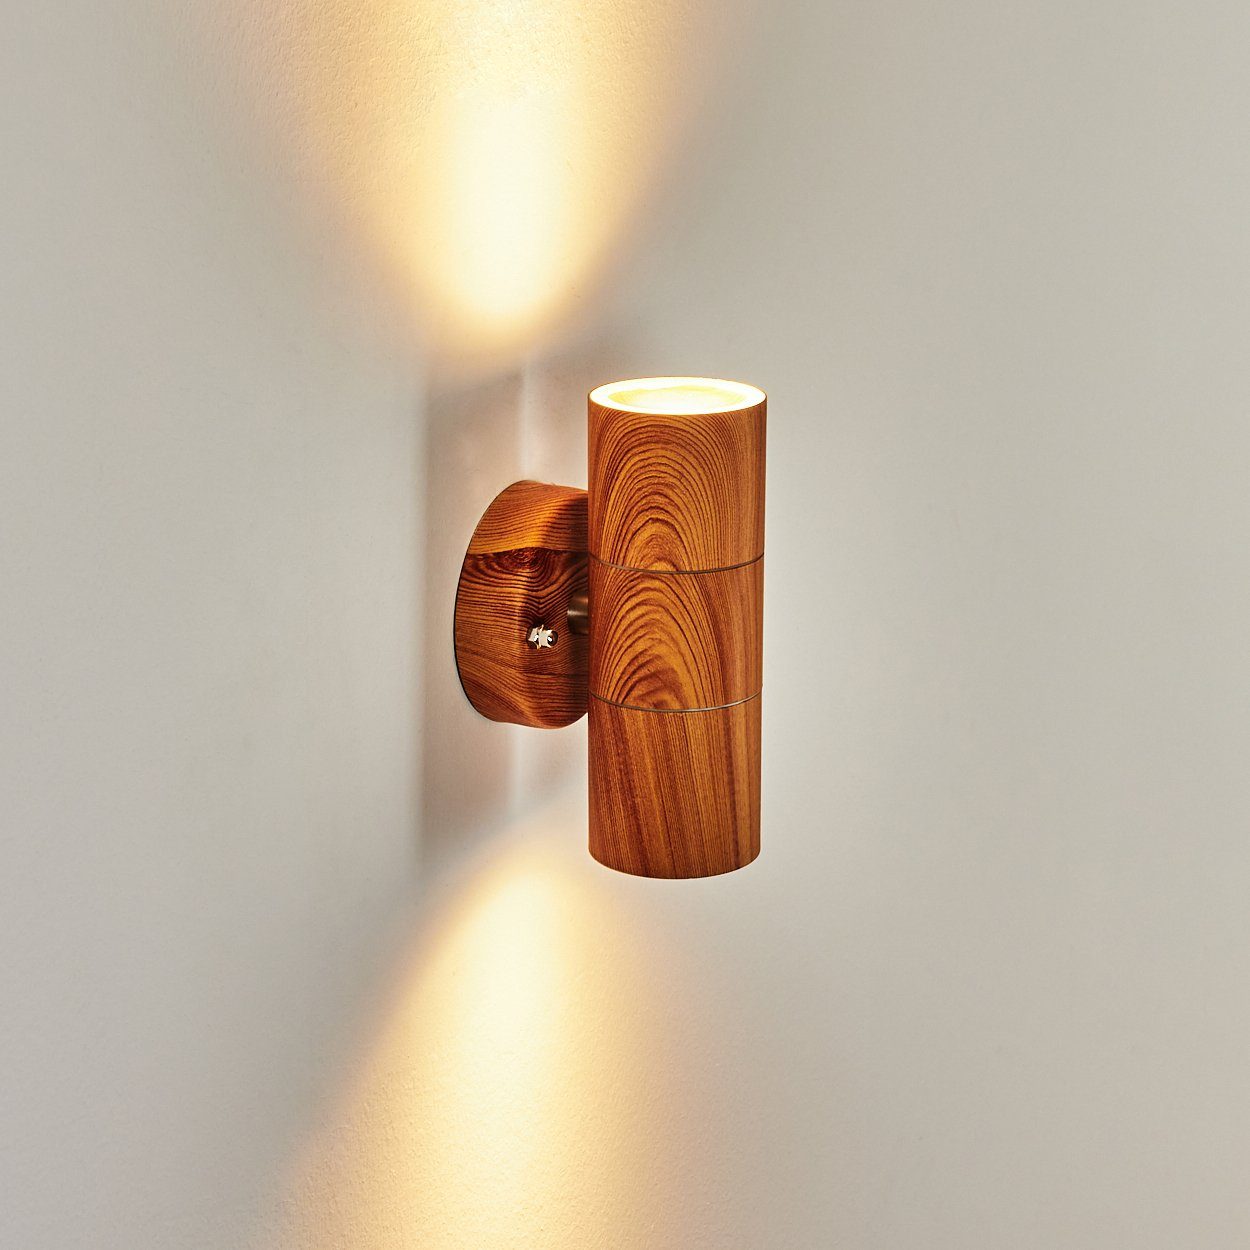 Holzoptik/Klar, geeignet »Roncadelle« GU10, für aus LED ohne moderne Up&Down, IP44 Außenlampe hofstein außen, Außen-Wandleuchte Metall/Glas Leuchtmittel, in Wandlampe